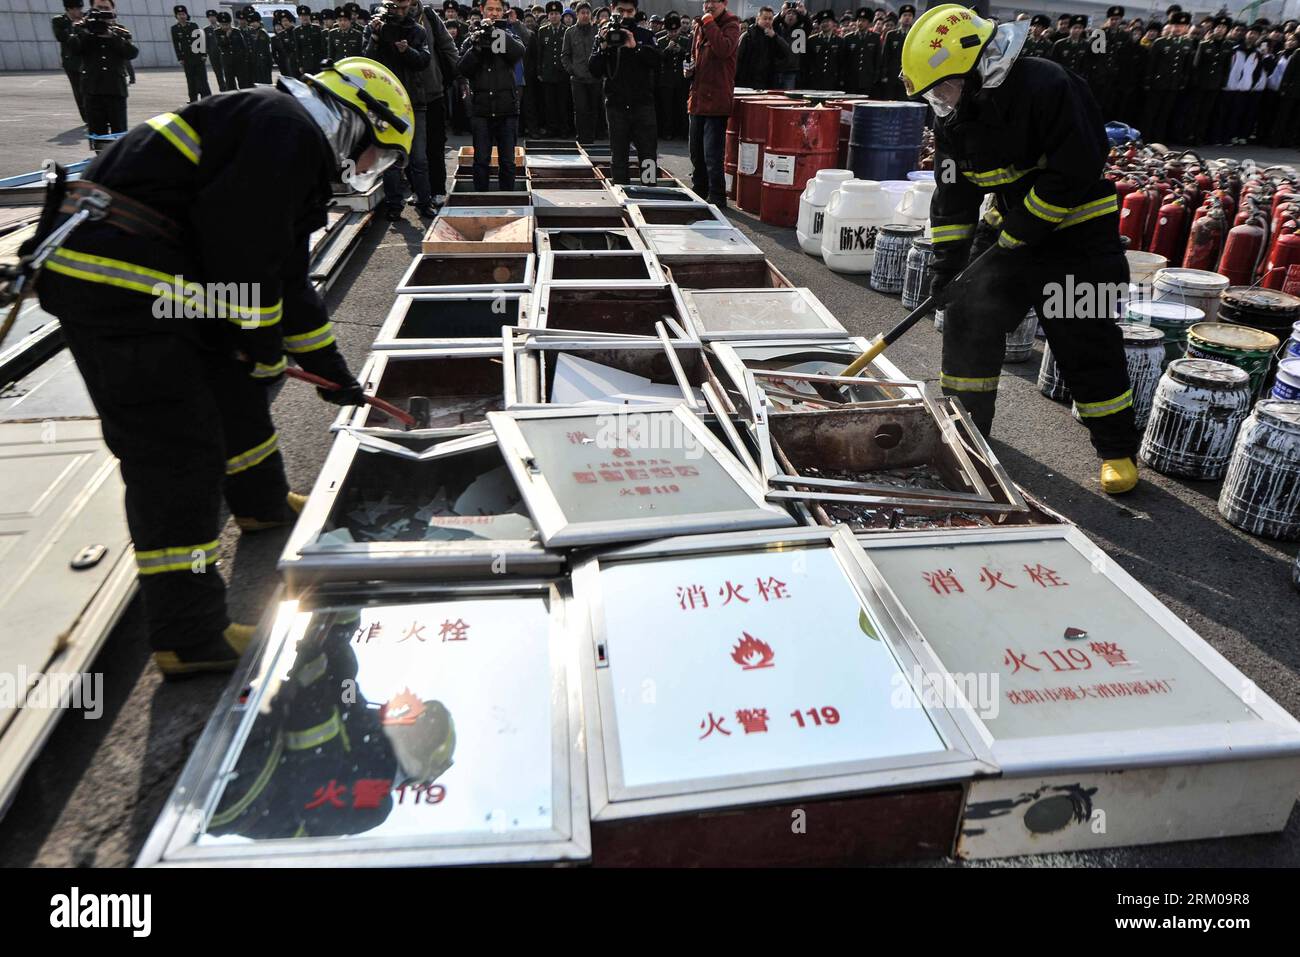 Bildnummer: 59356333  Datum: 15.03.2013  Copyright: imago/Xinhua (130315) -- CHANGCHUN, March 15, 2013 (Xinhua) -- Firemen destroy counterfeit fire equipments in Changchun, capital of northeast China s Jilin Province, March 15, 2013. A total of 6,633 counterfeit fire equipments were destroyed in Changchun on Friday, the International Day for Protecting Consumers Rights. (Xinhua/Wang Haofei) (zkr) CHINA-CHANGCHUN-COUNTERFEIT FIRE EQUIPMENT-DESTRUCTION(CN) PUBLICATIONxNOTxINxCHN Gesellschaft Feuerwehr Brandschutz Brandschutzmittel feuerbekämpfungsmittel Zerstörung x0x xmb 2013 quer      59356333 Stock Photo